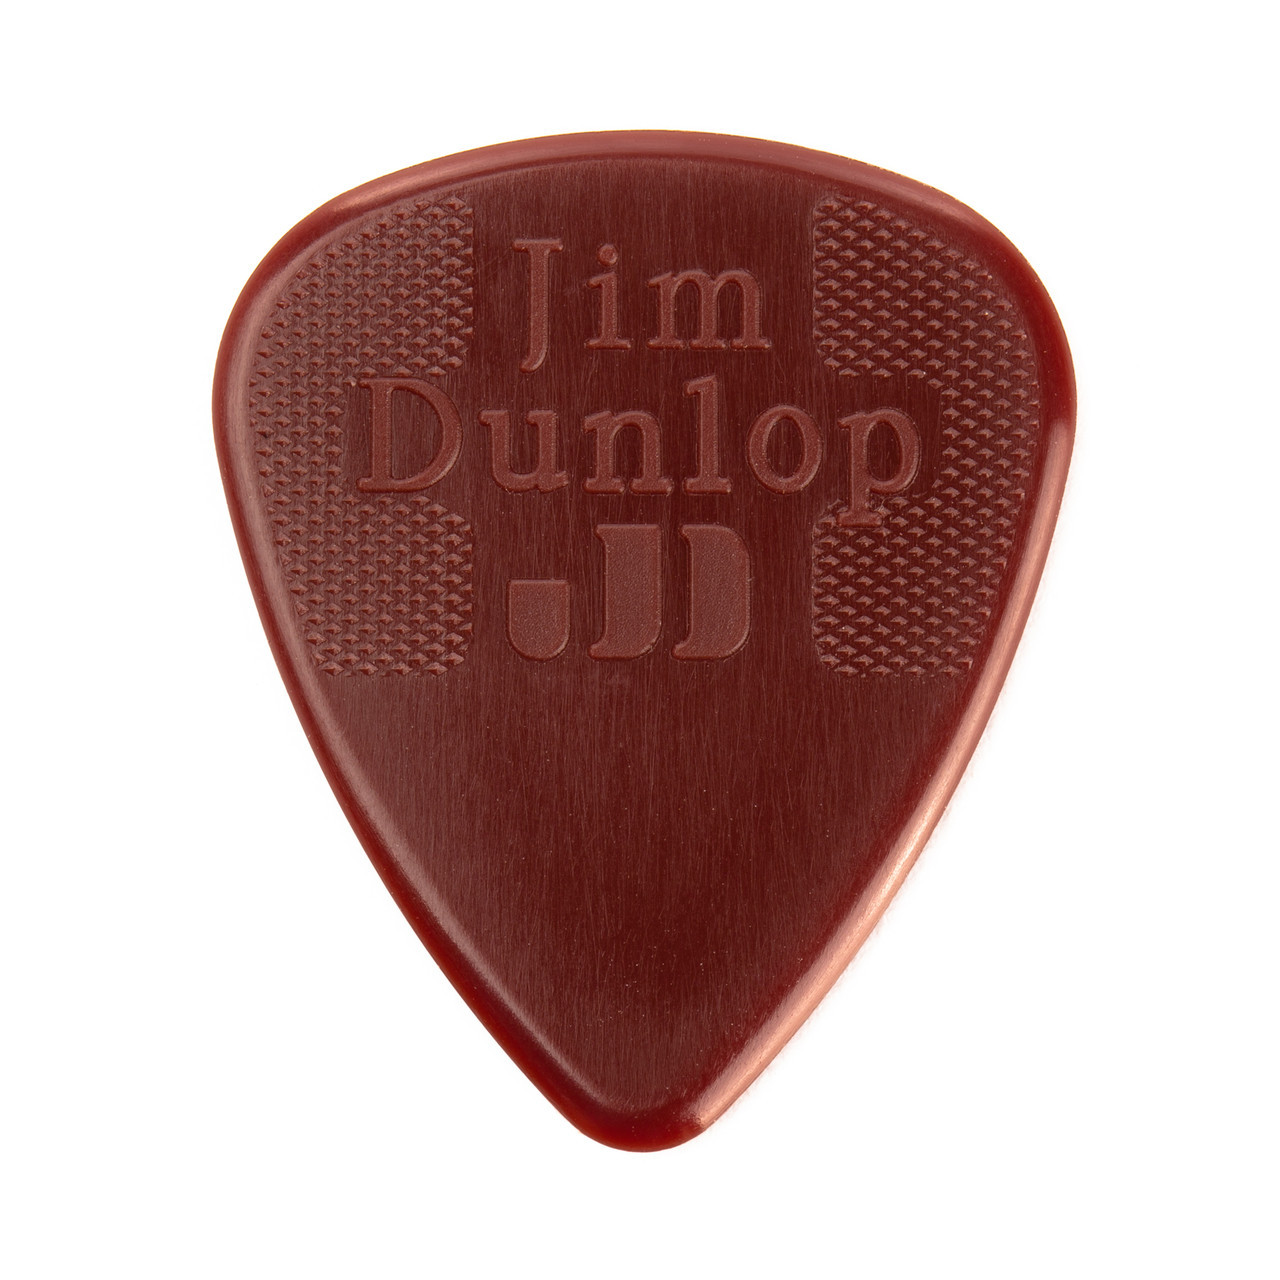 Jim Dunlop Nylon Standard Pick 1.25mm (12pk)